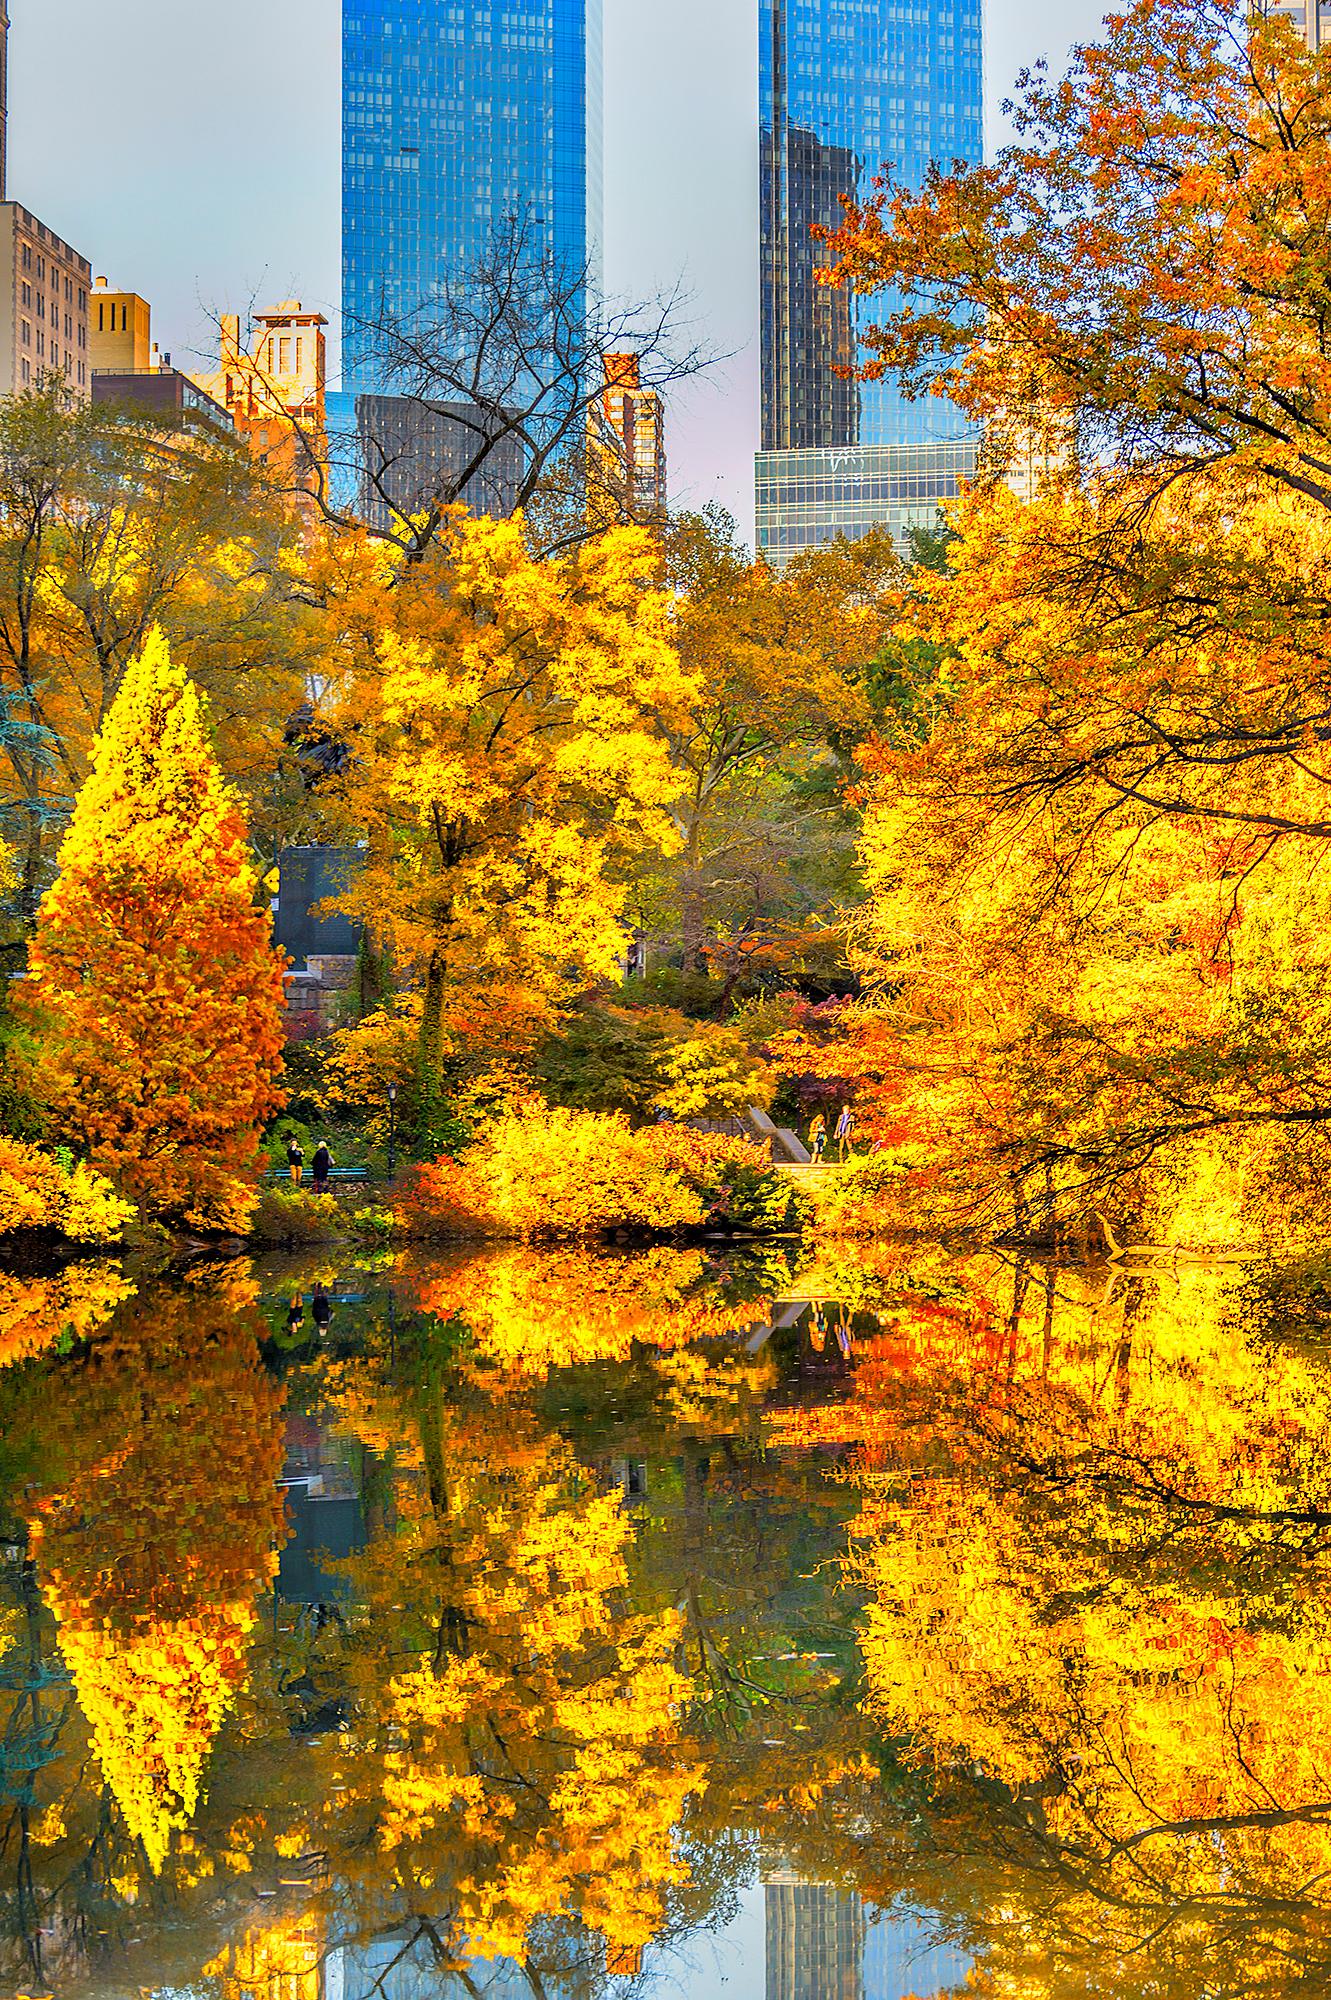 Landscape Photograph Mitchell Funk - Feuillage jaune et doré à Central Park - Photographie de Nature